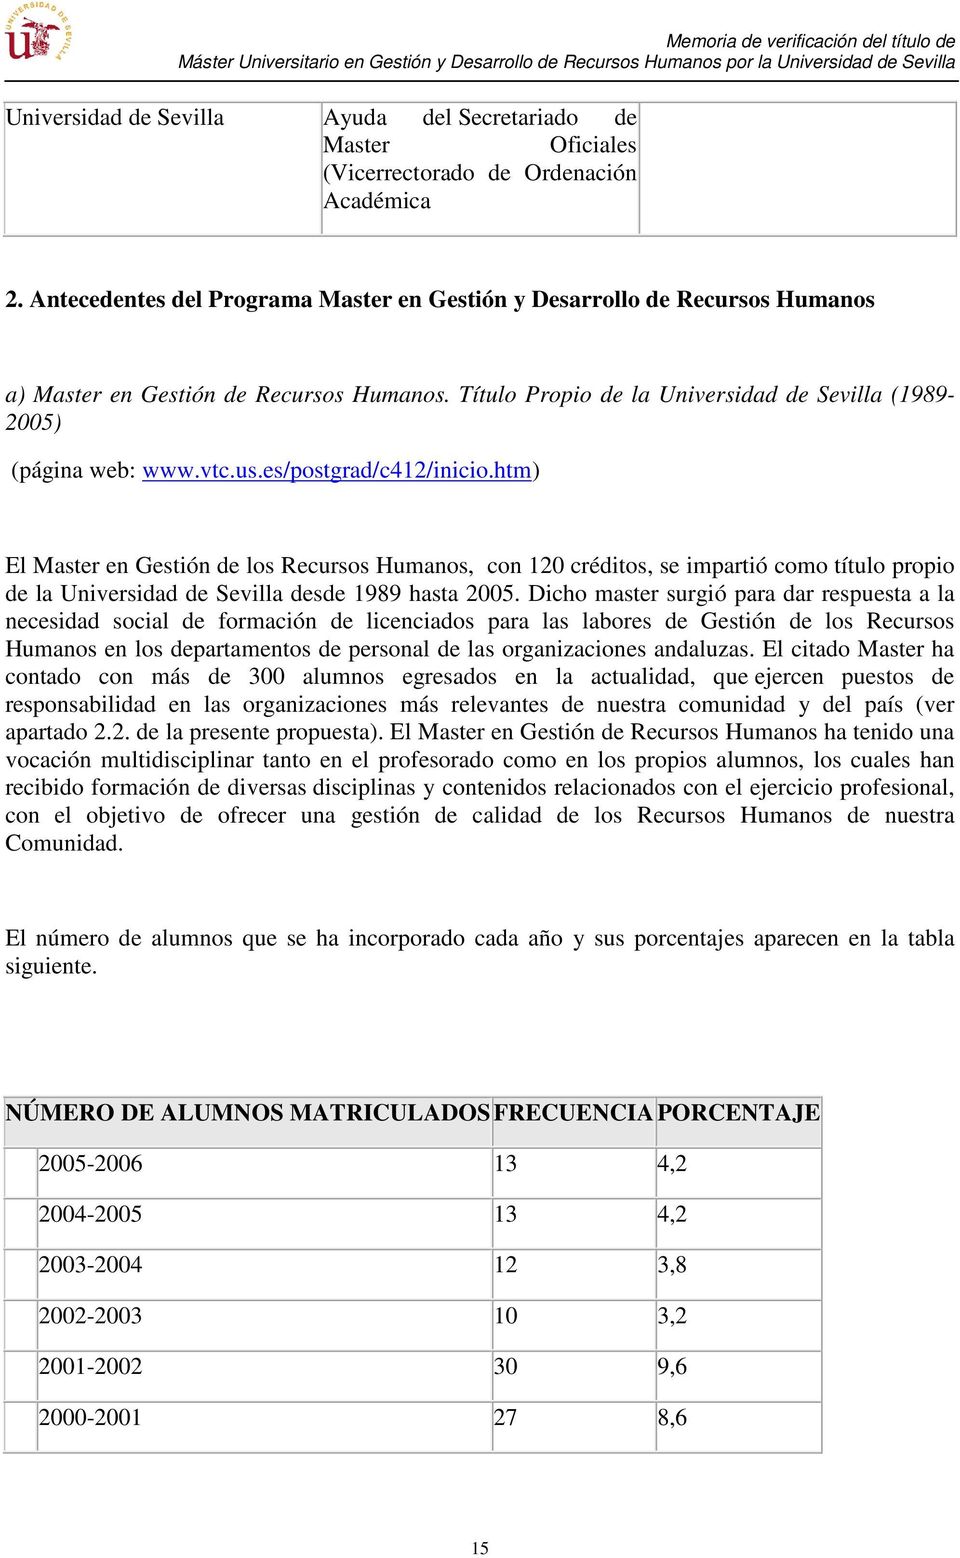 es/postgrad/c412/inicio.htm) El Master en Gestión de los Recursos Humanos, con 120 créditos, se impartió como título propio de la Universidad de Sevilla desde 1989 hasta 2005.